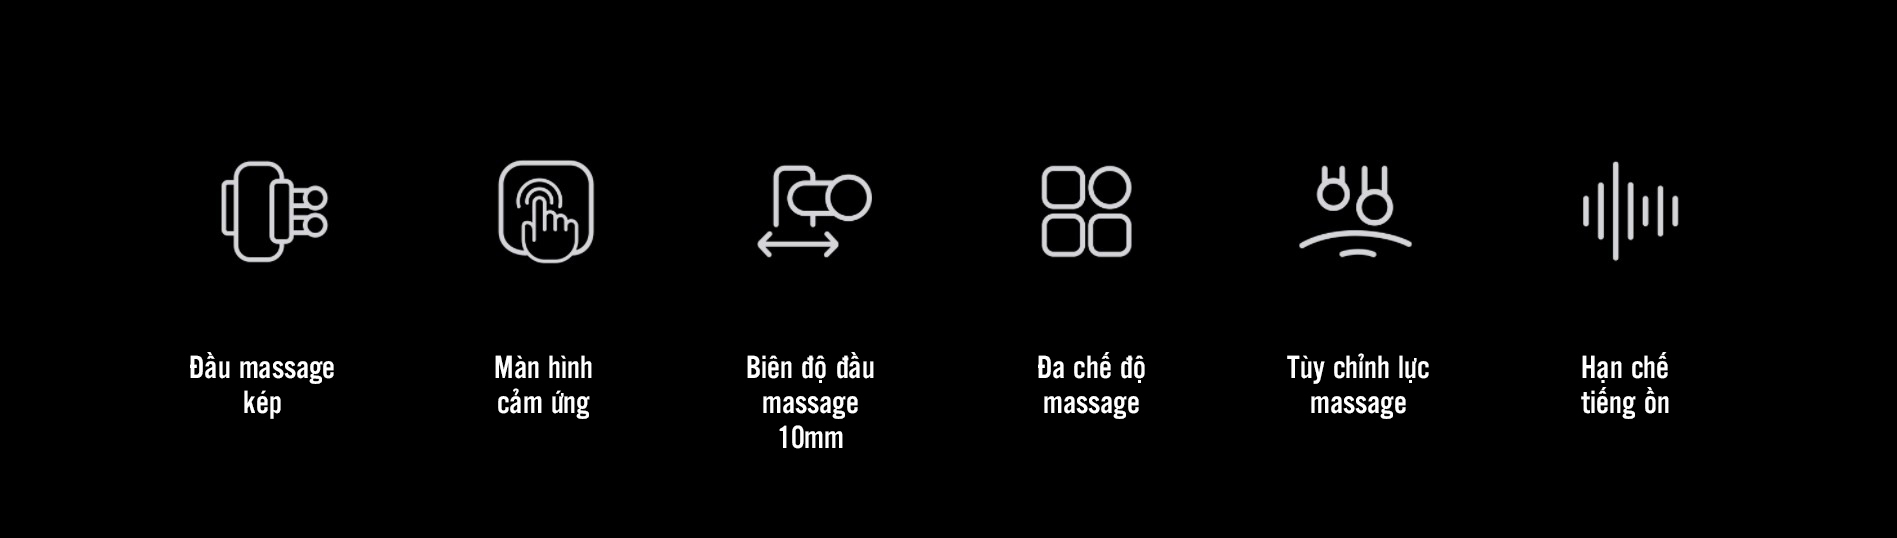 may massage kica 3.13 Máy massage cơ đa năng KiCA 3 - Green - YCB.vn